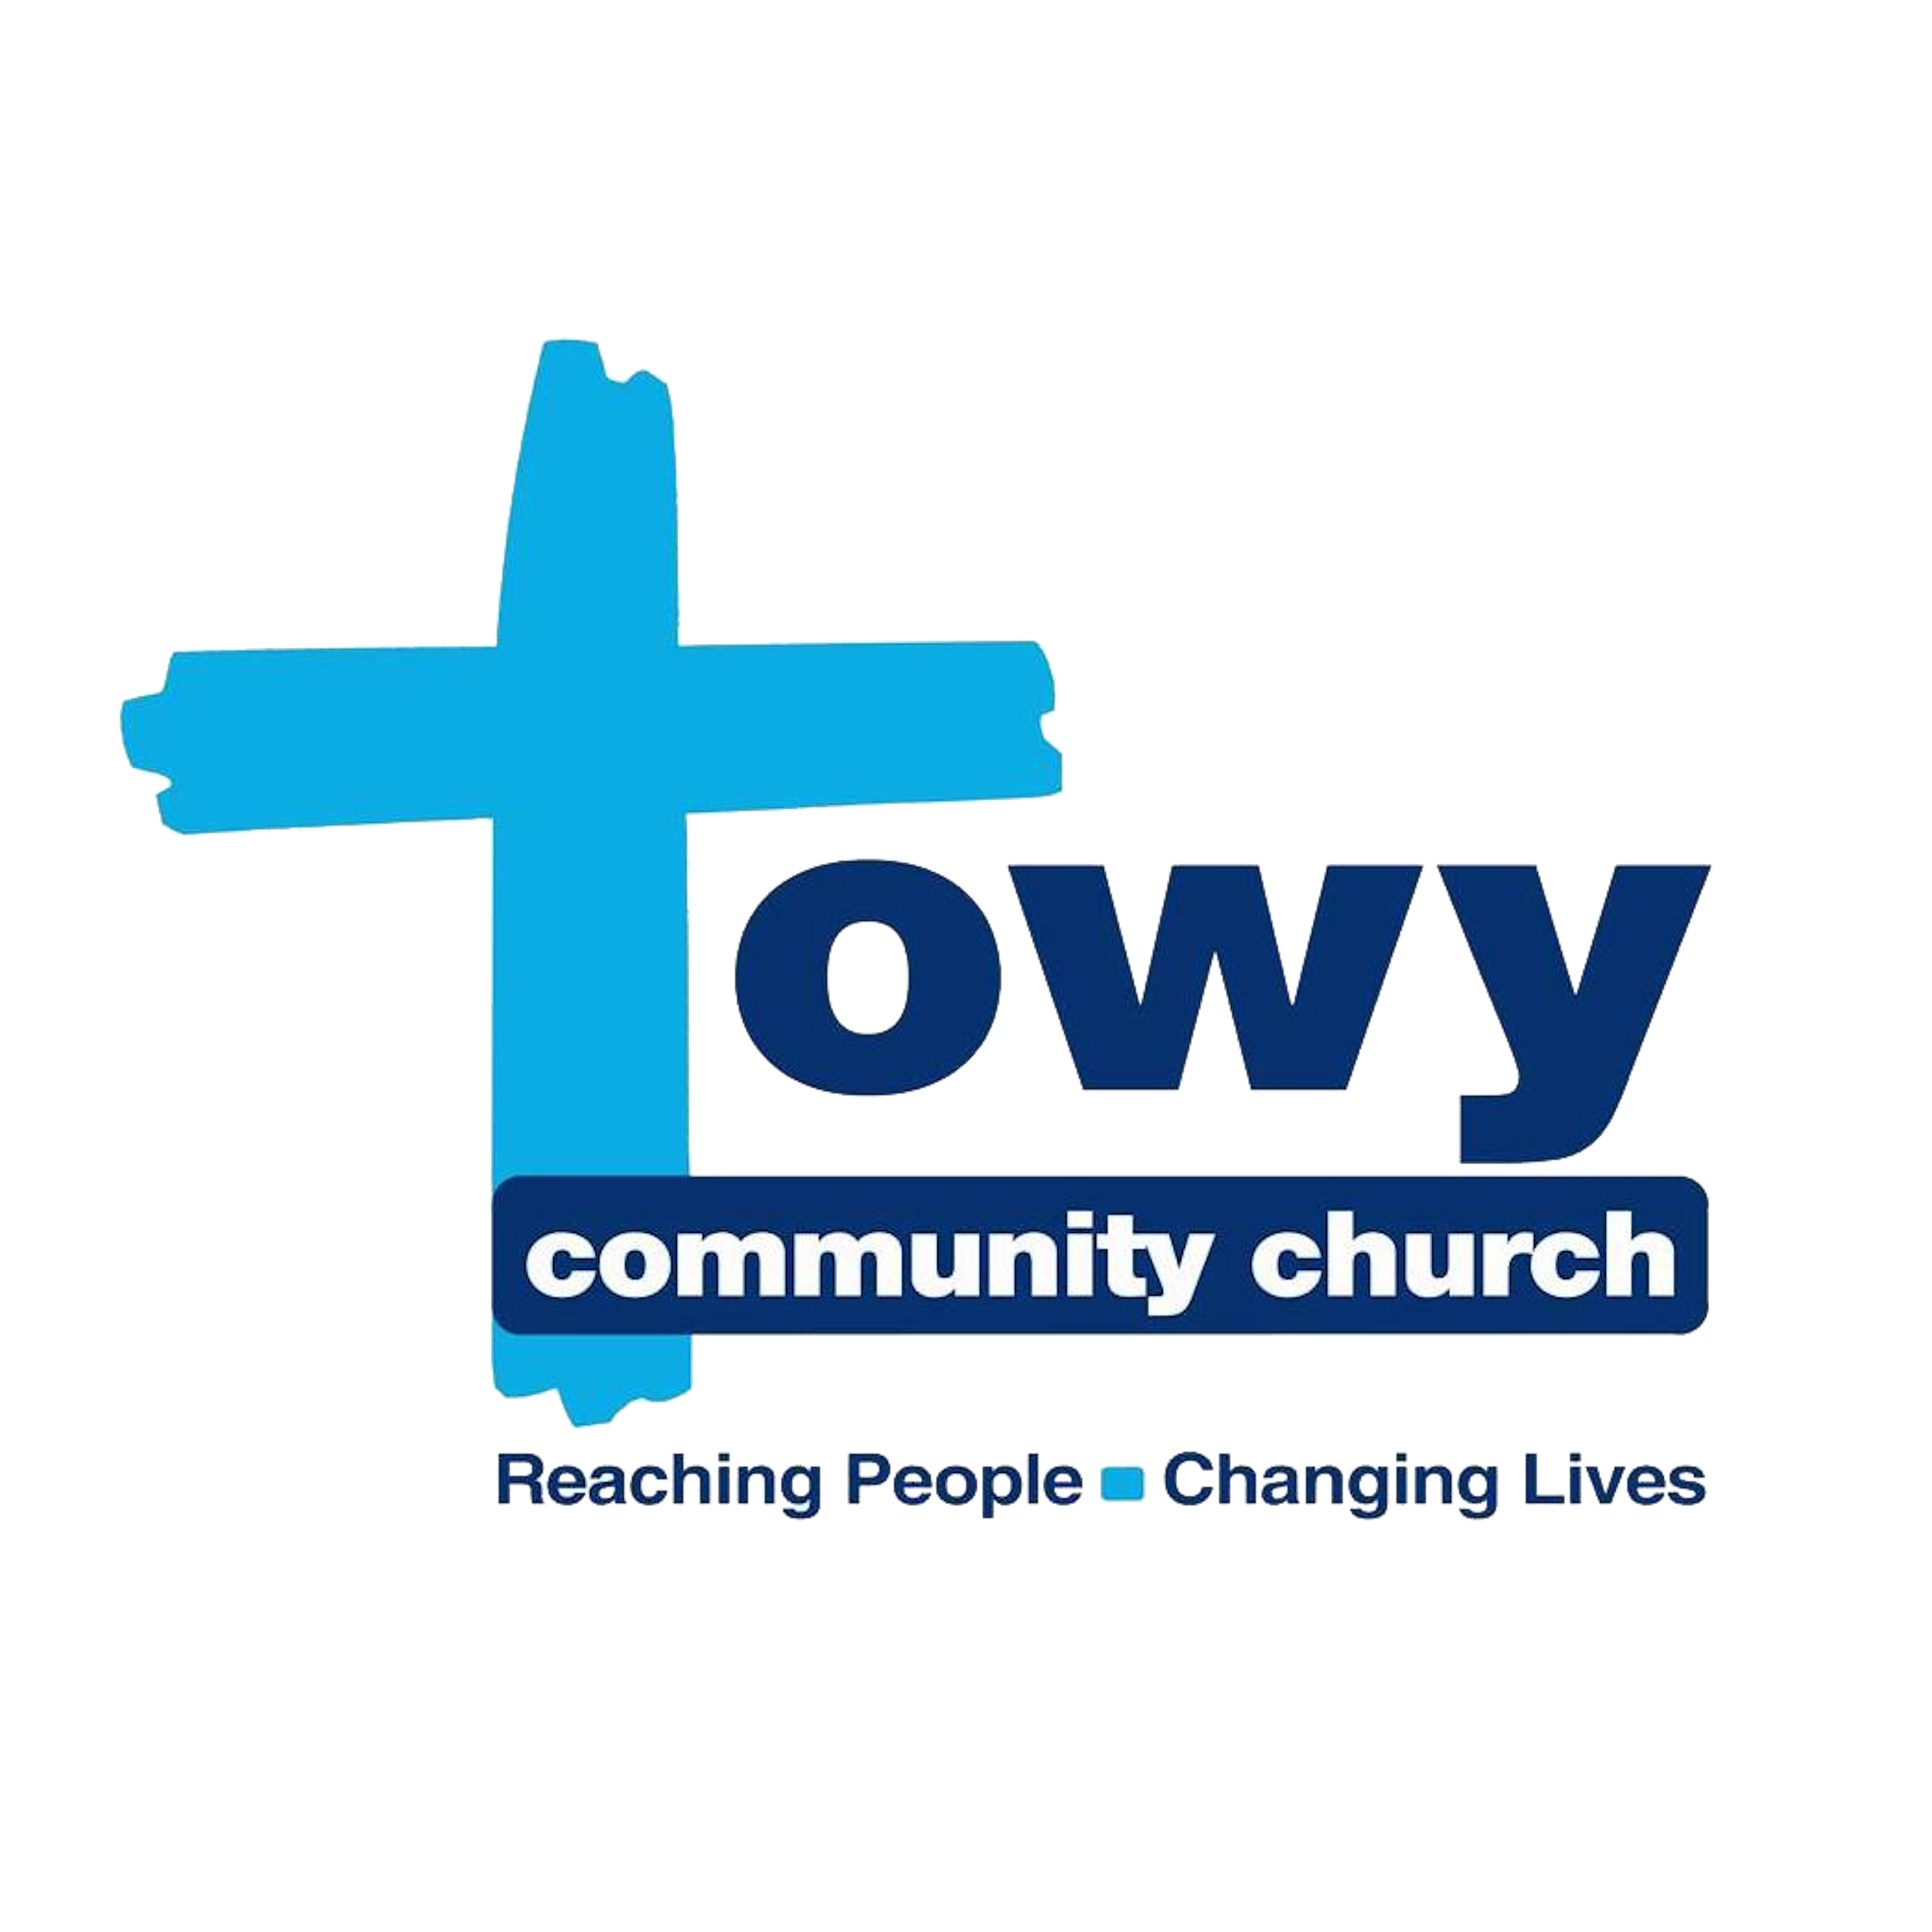 Towy Community Church